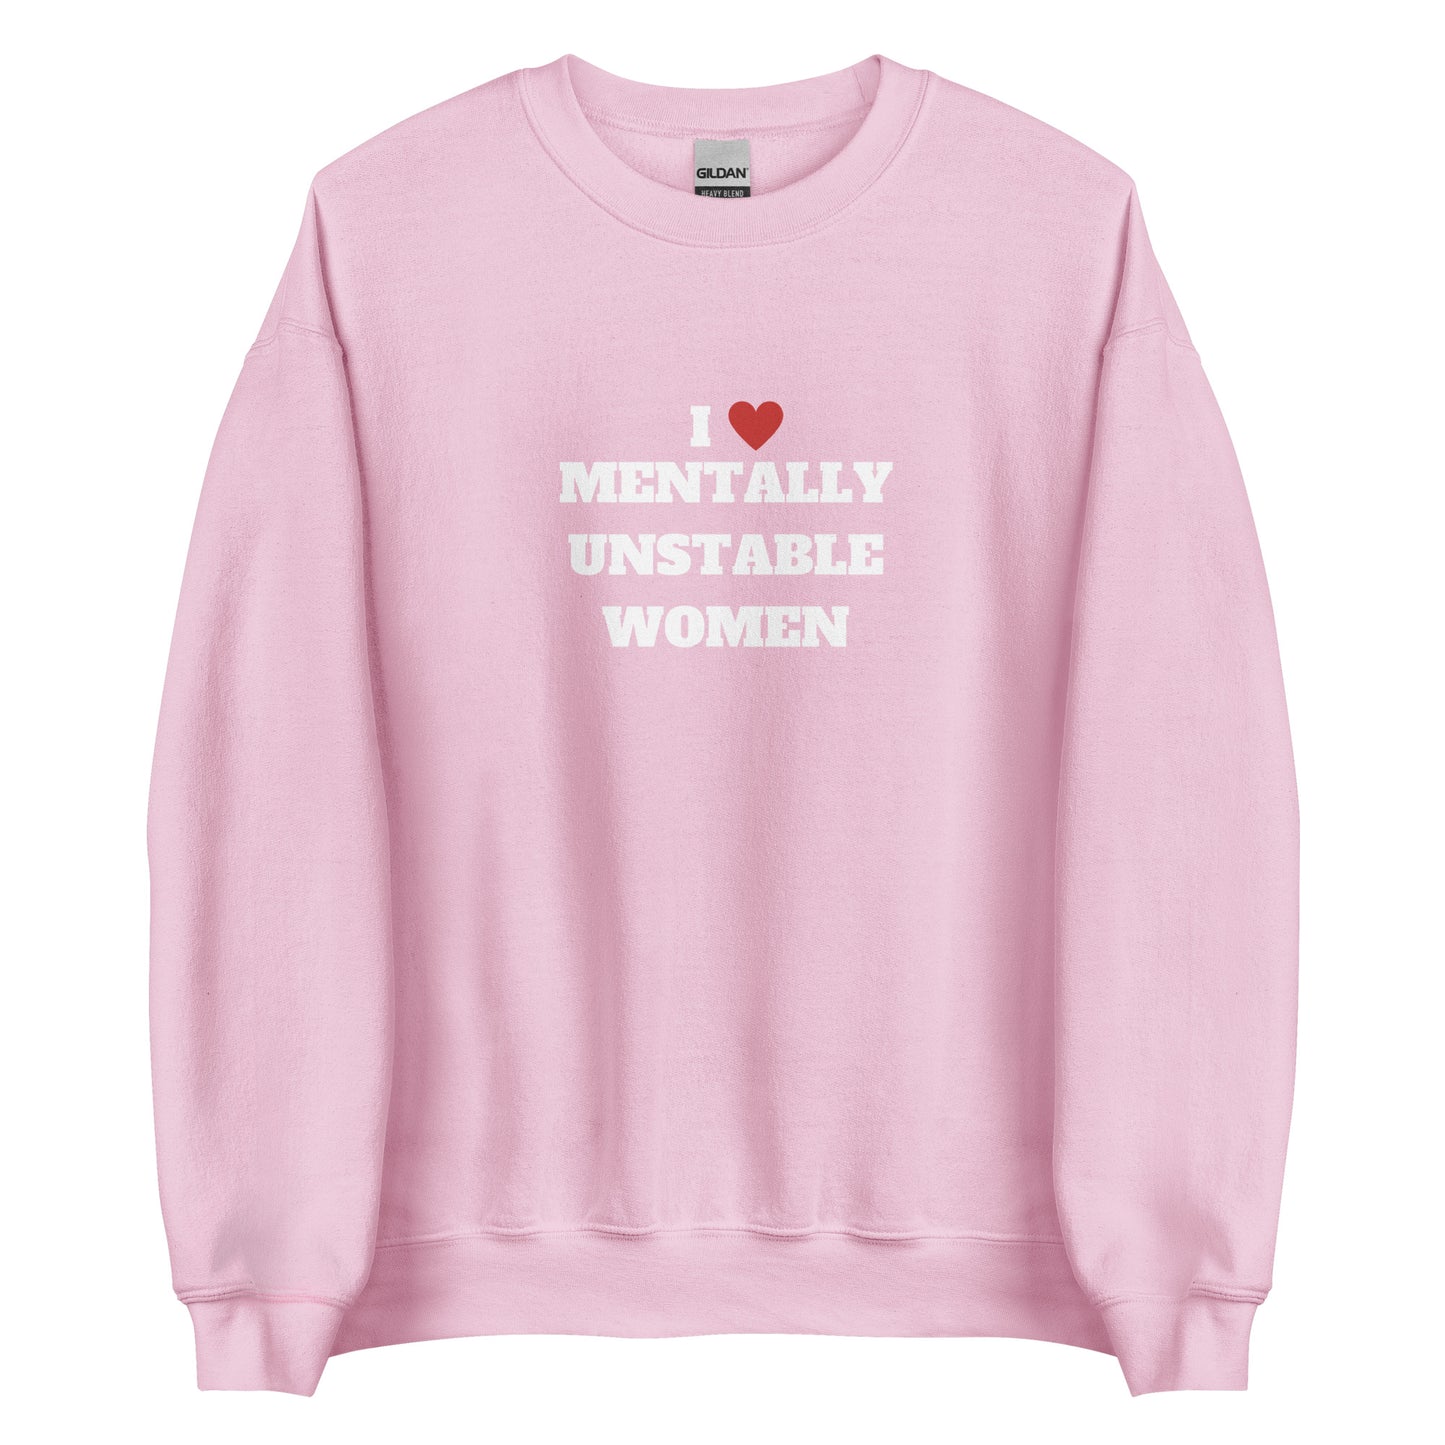 Unstable Women Sweatshirt